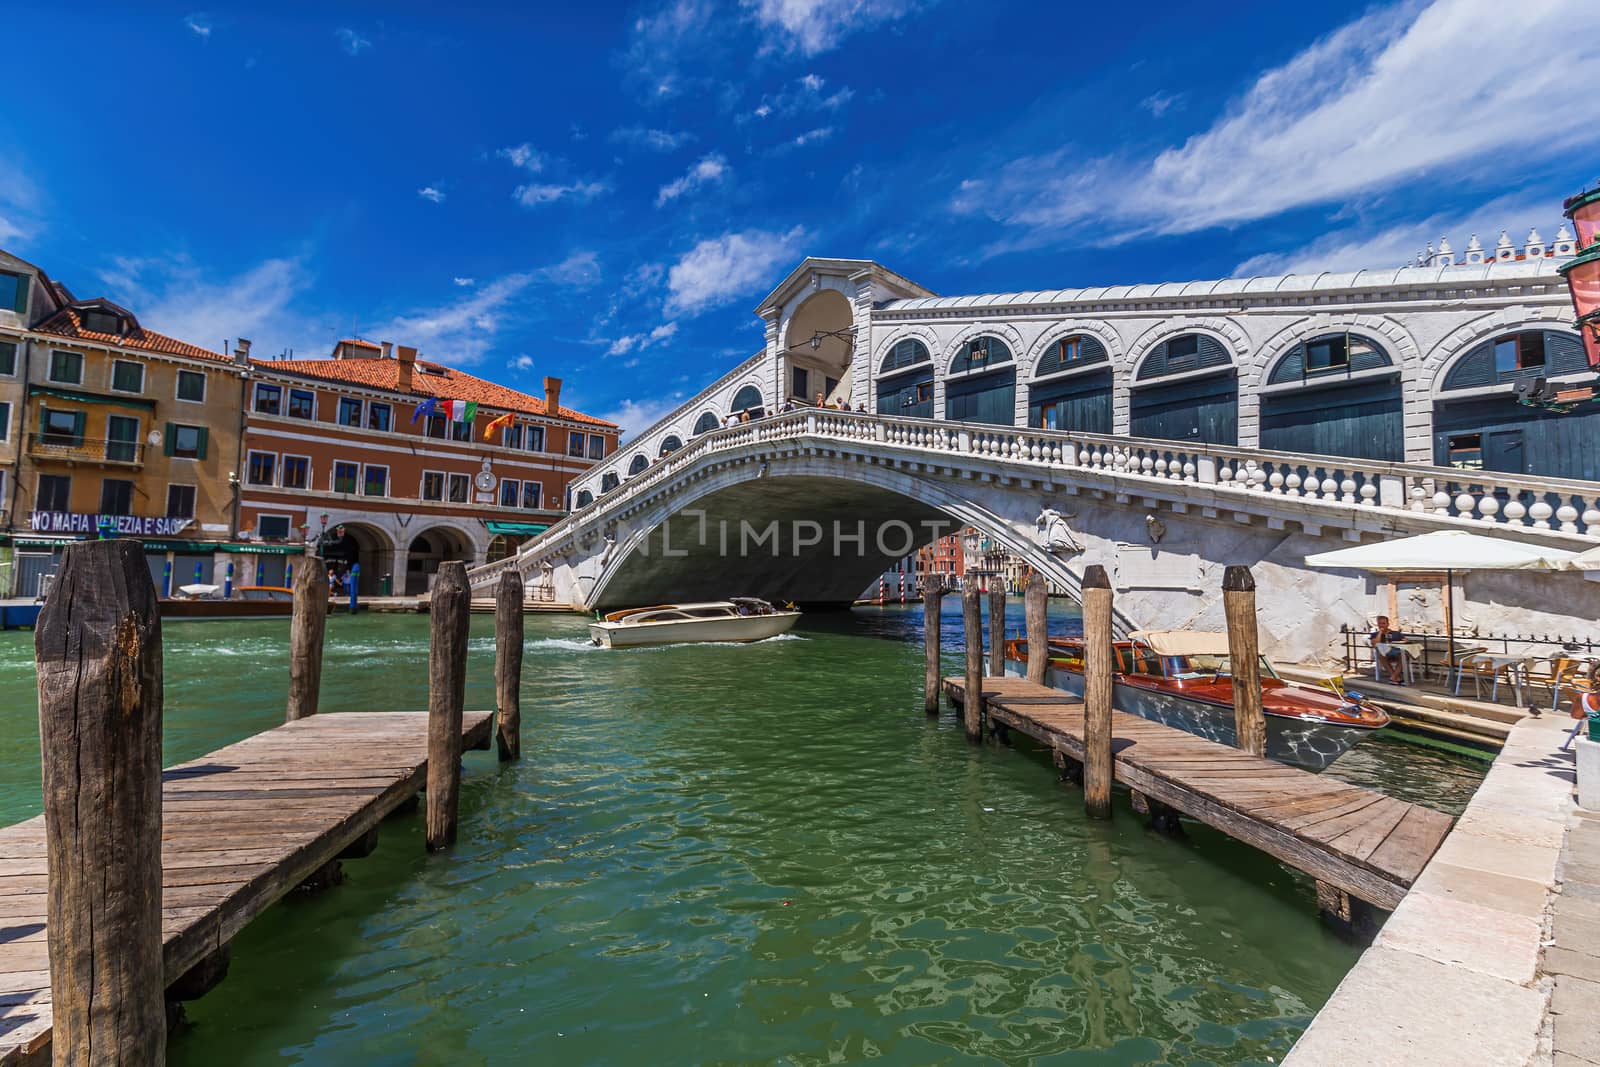 The Rialto bridge in Venice, Italy by COffe